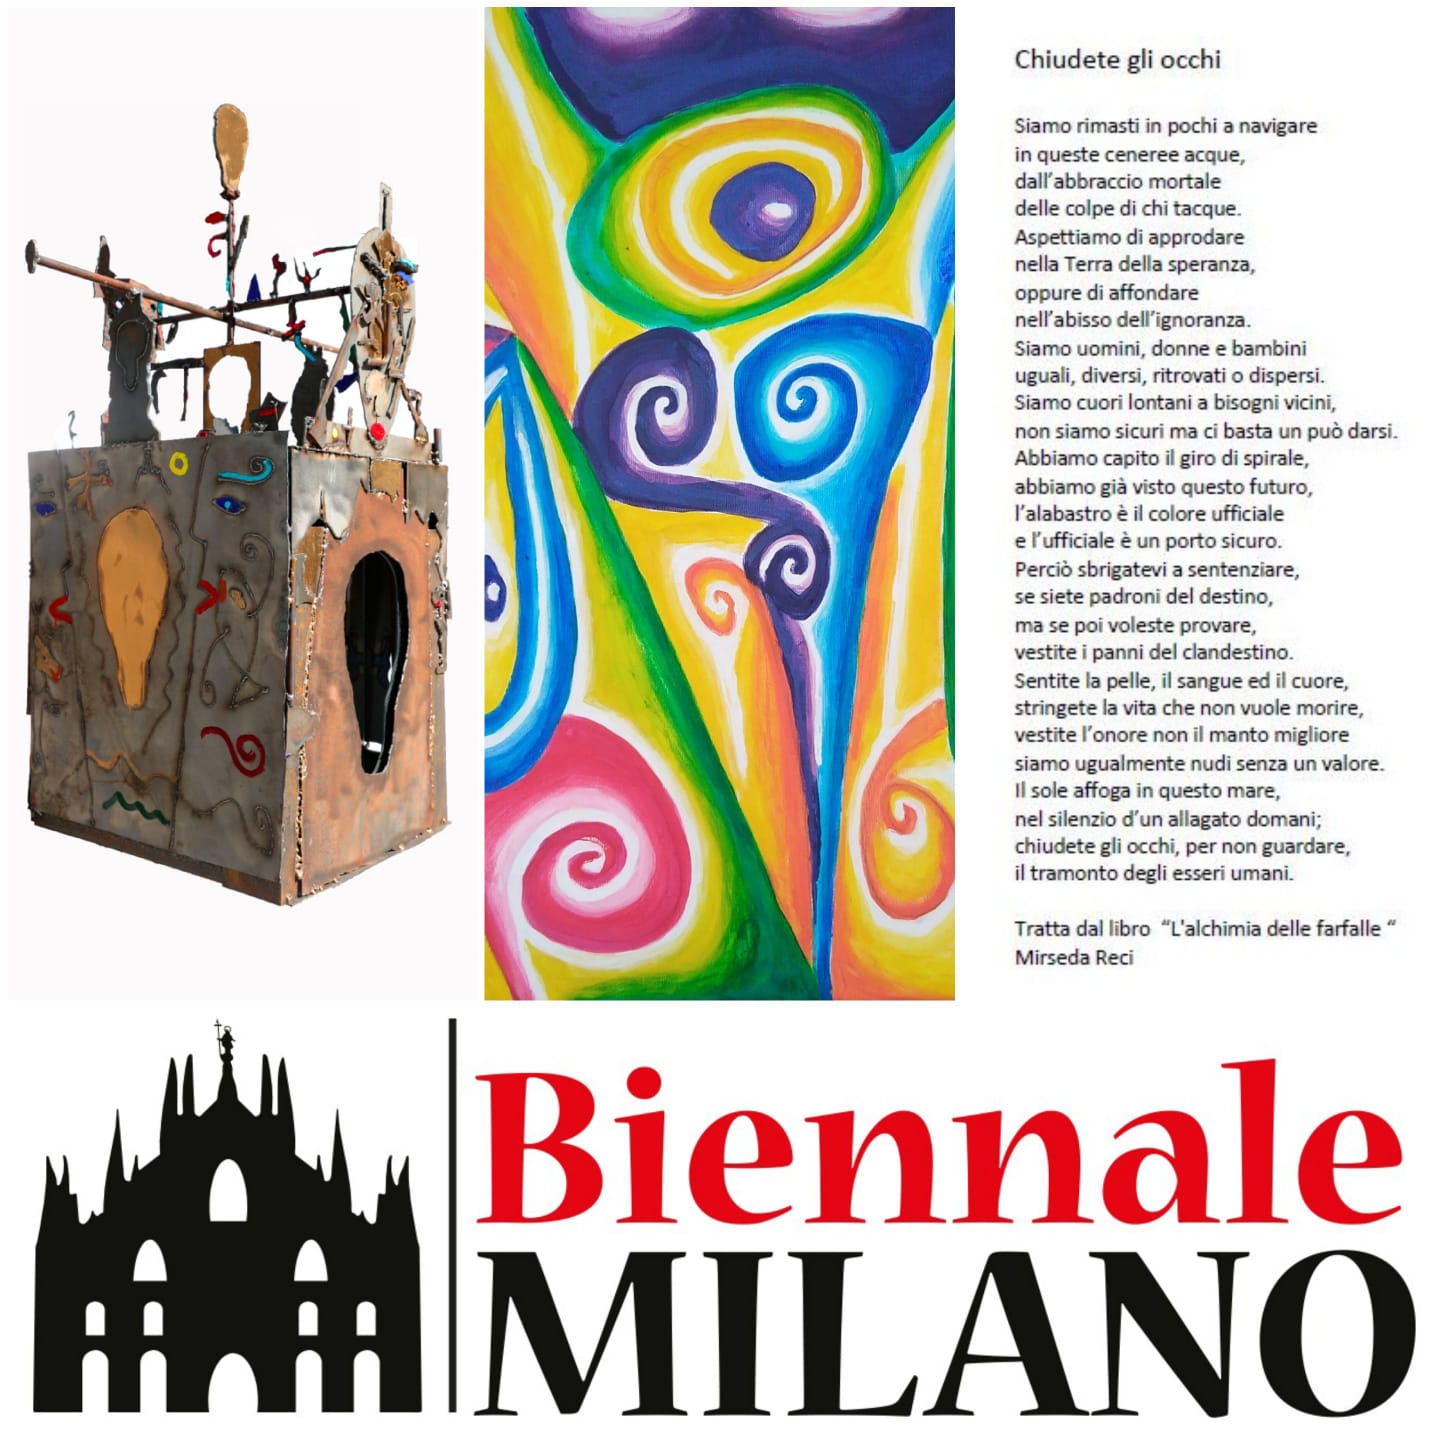 Salvo Nugnes presenta alla prestigiosa Biennale Milano le opere di talentuosi artisti come Maquignaz, Reci e Rossi